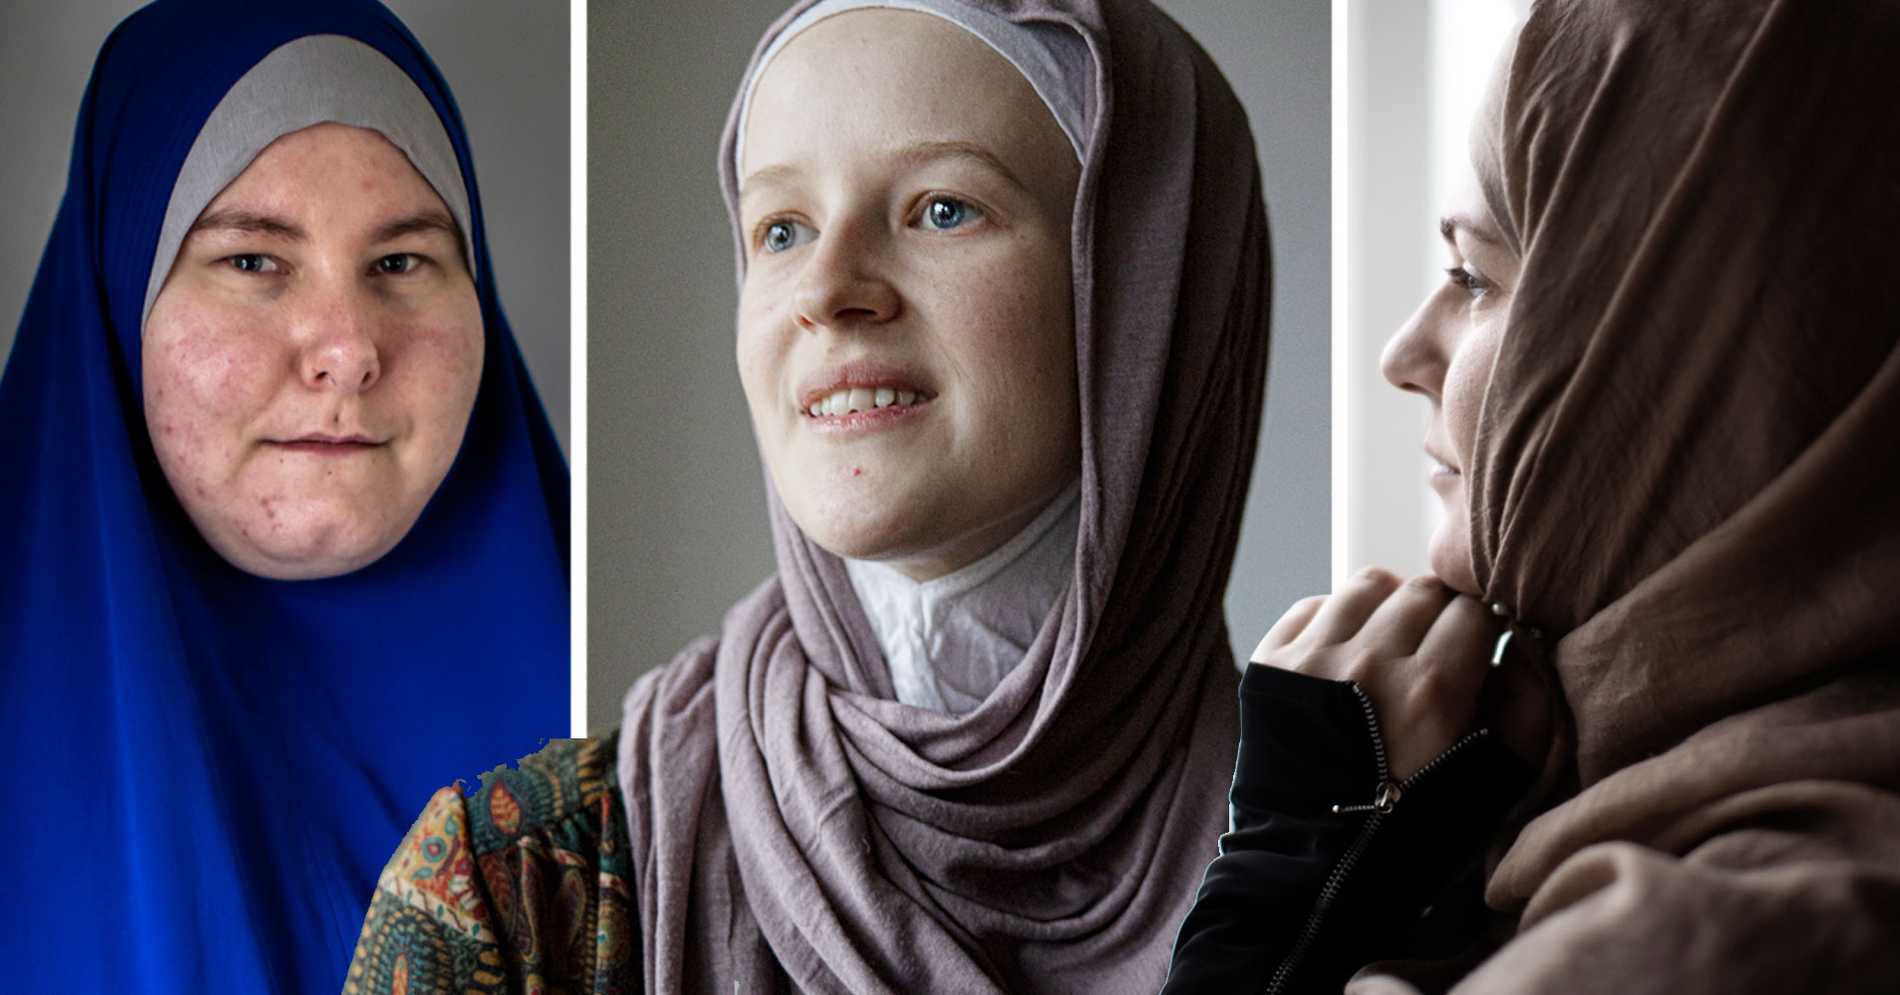 Swedish muslim women